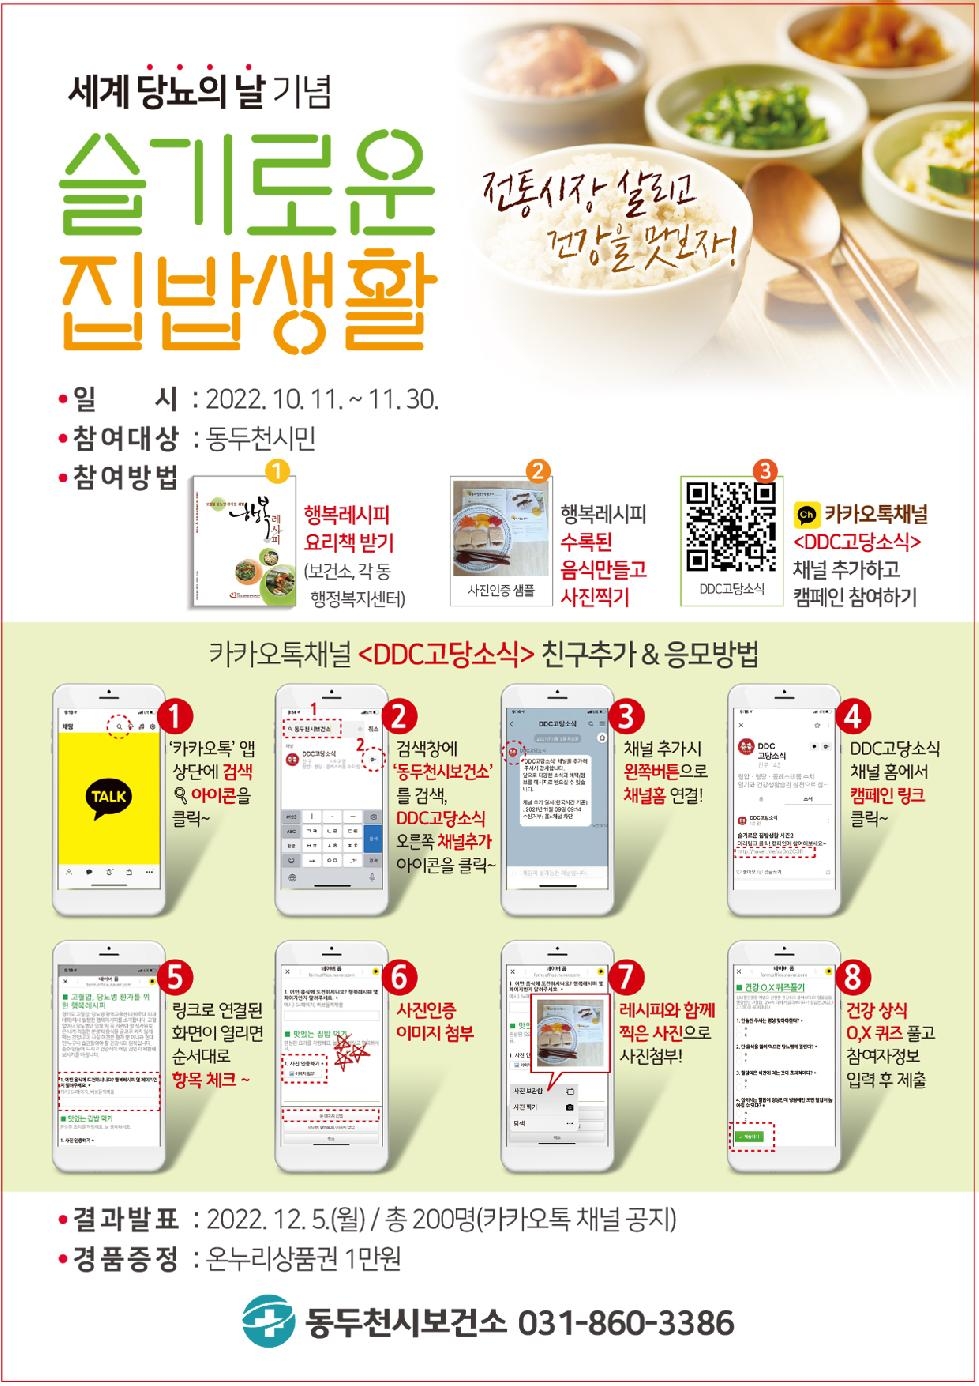 동두천시, “슬기로운 집밥생활 시즌3” 캠페인 실시